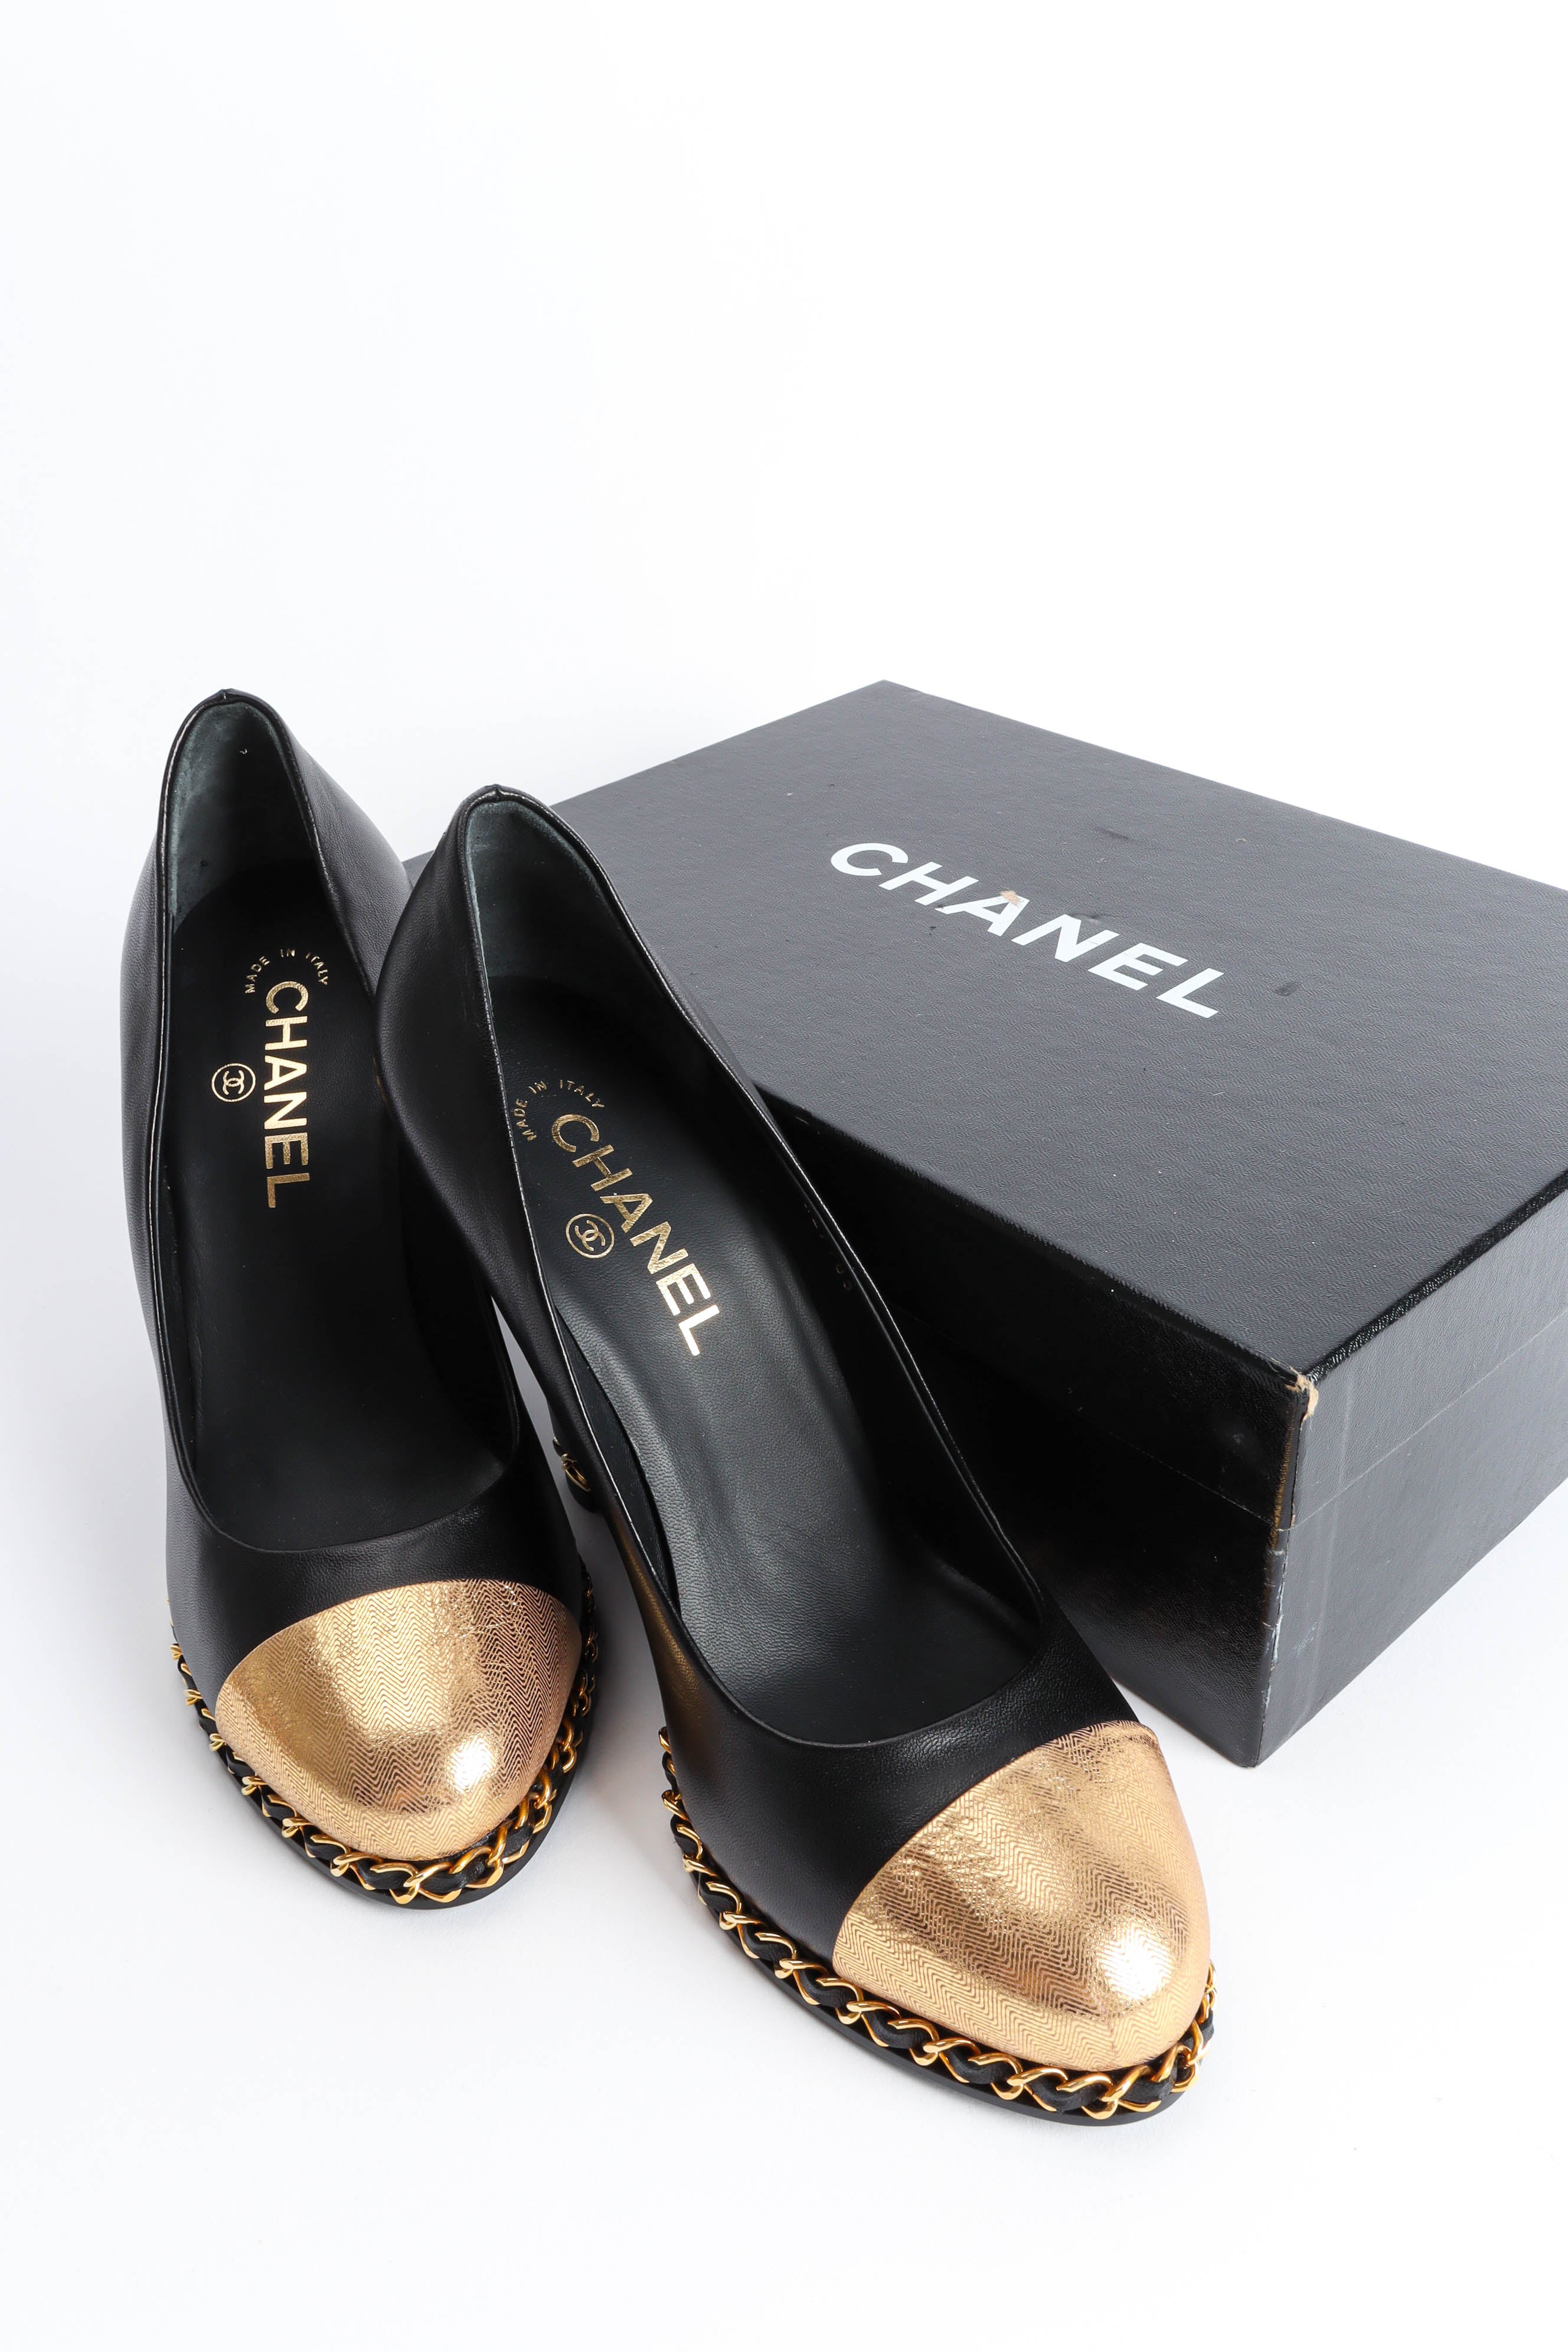 Vintage Chanel CC Cap Toe Chain Link Pumps shoes with box @ Recess LA